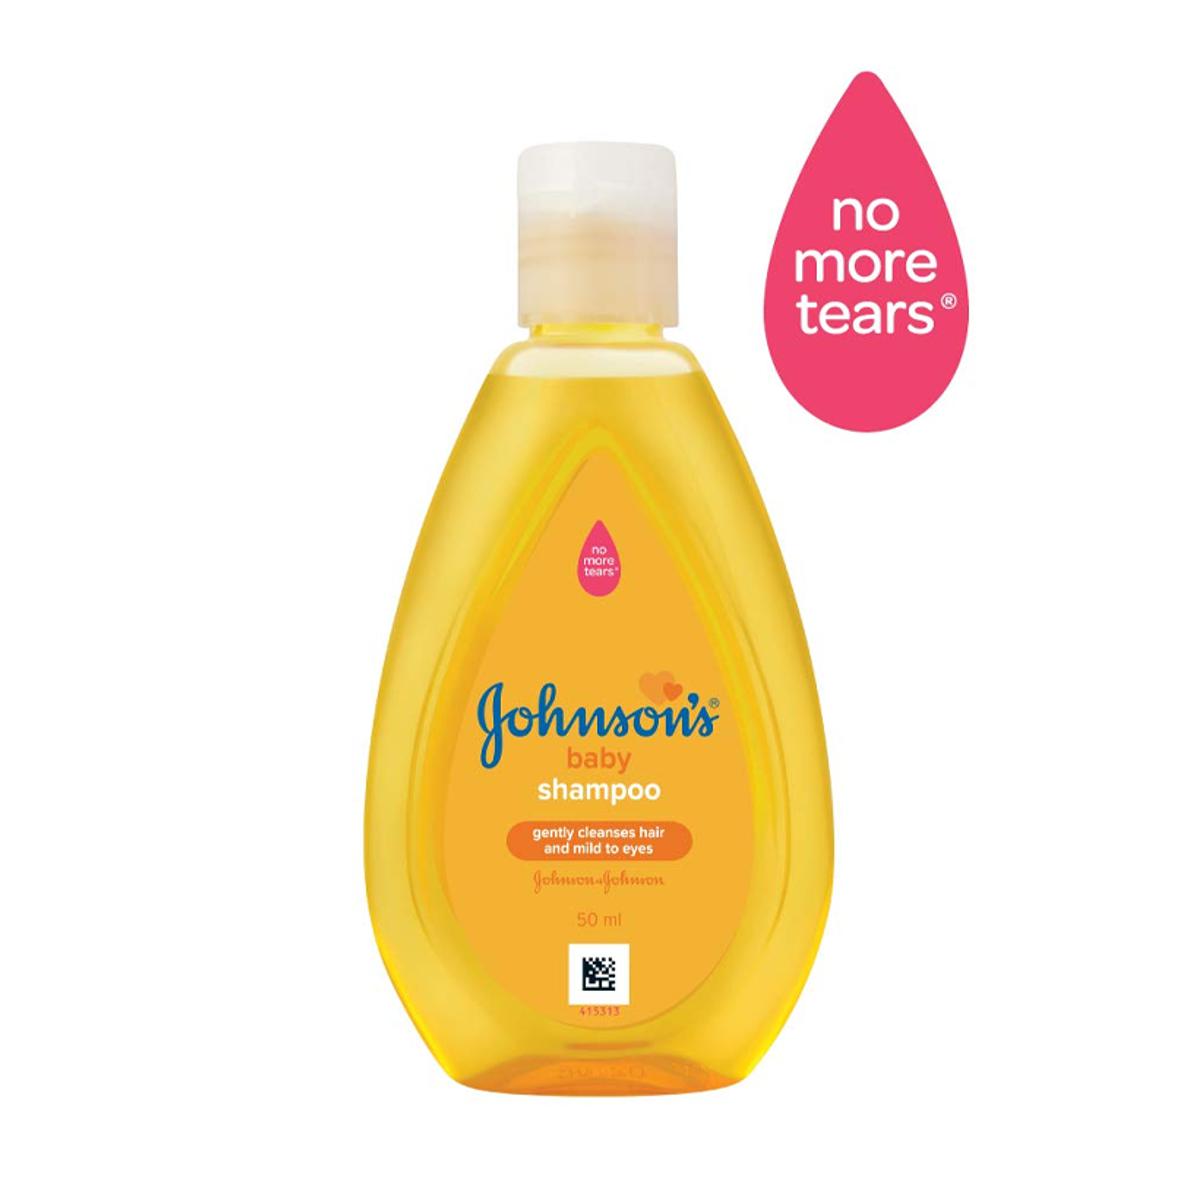 Johnson’s Baby Shampoo 50ml.